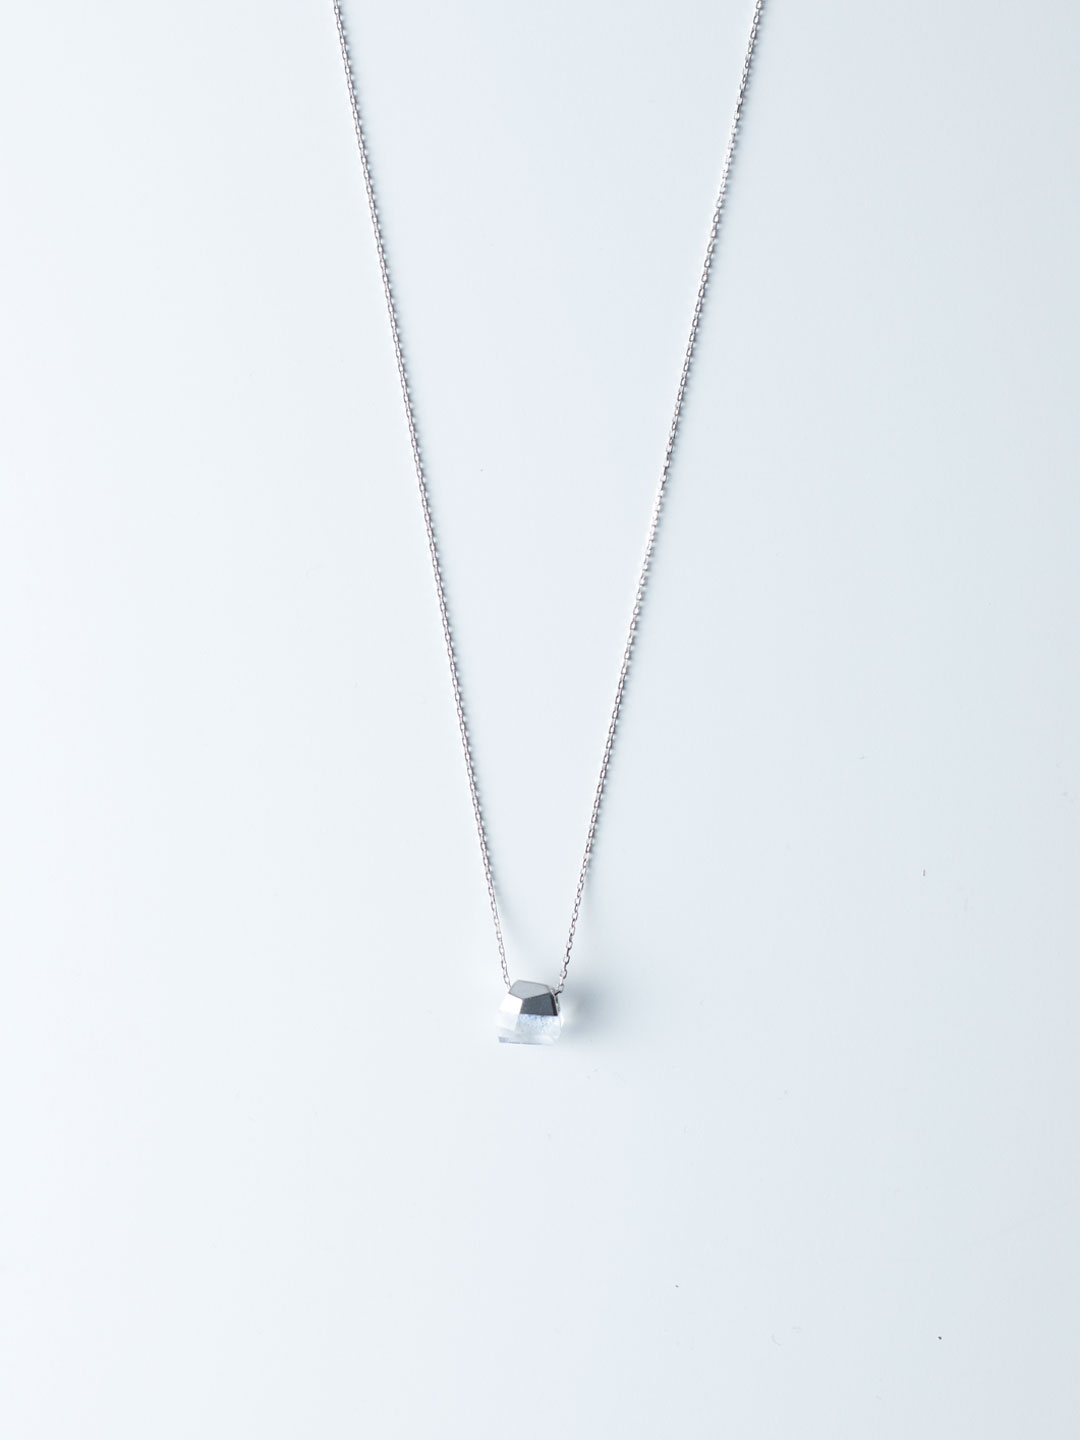 Rock Necklace No.1 / Dumortierite In Quartz - White Gold